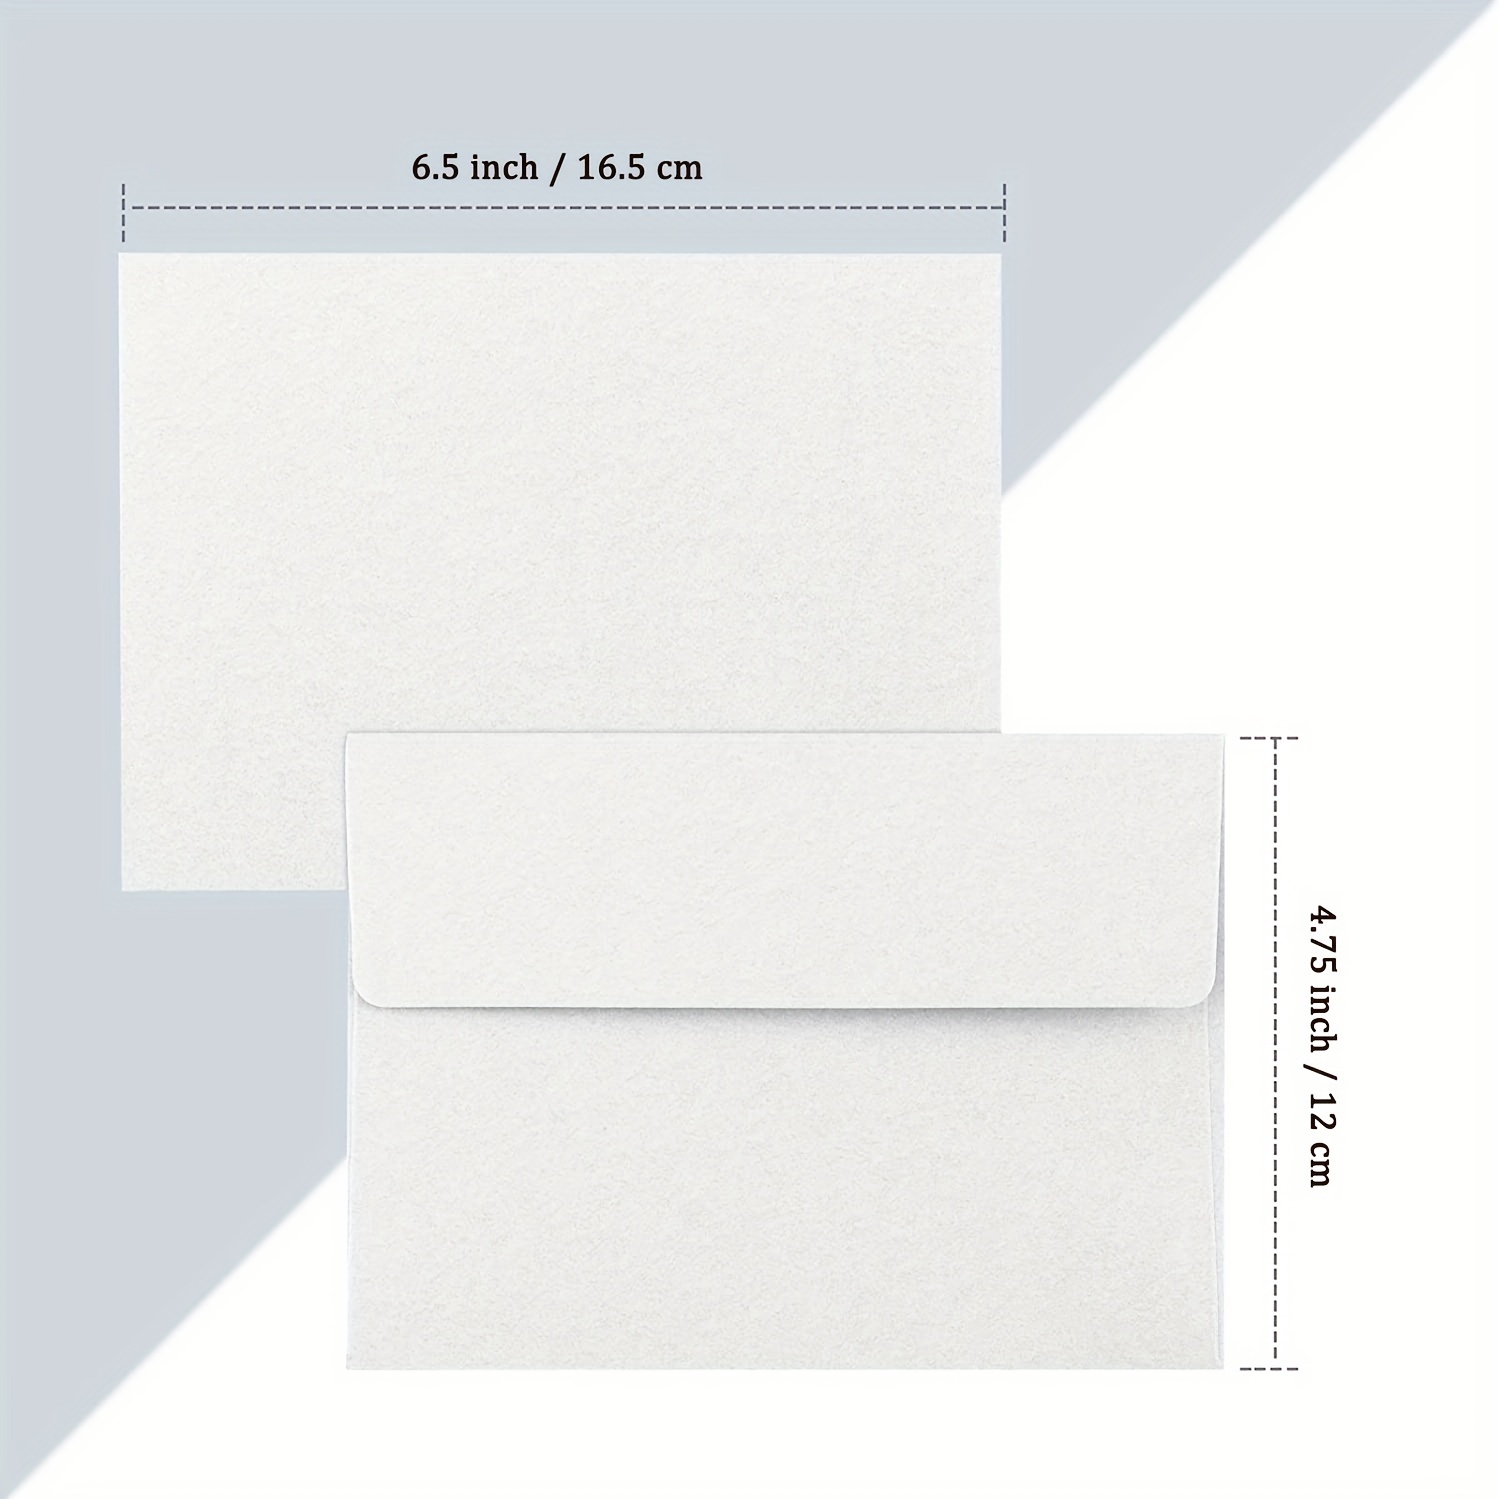 White Envelopes 5x7 Rectangle Flap, MYCARDS WEDDING